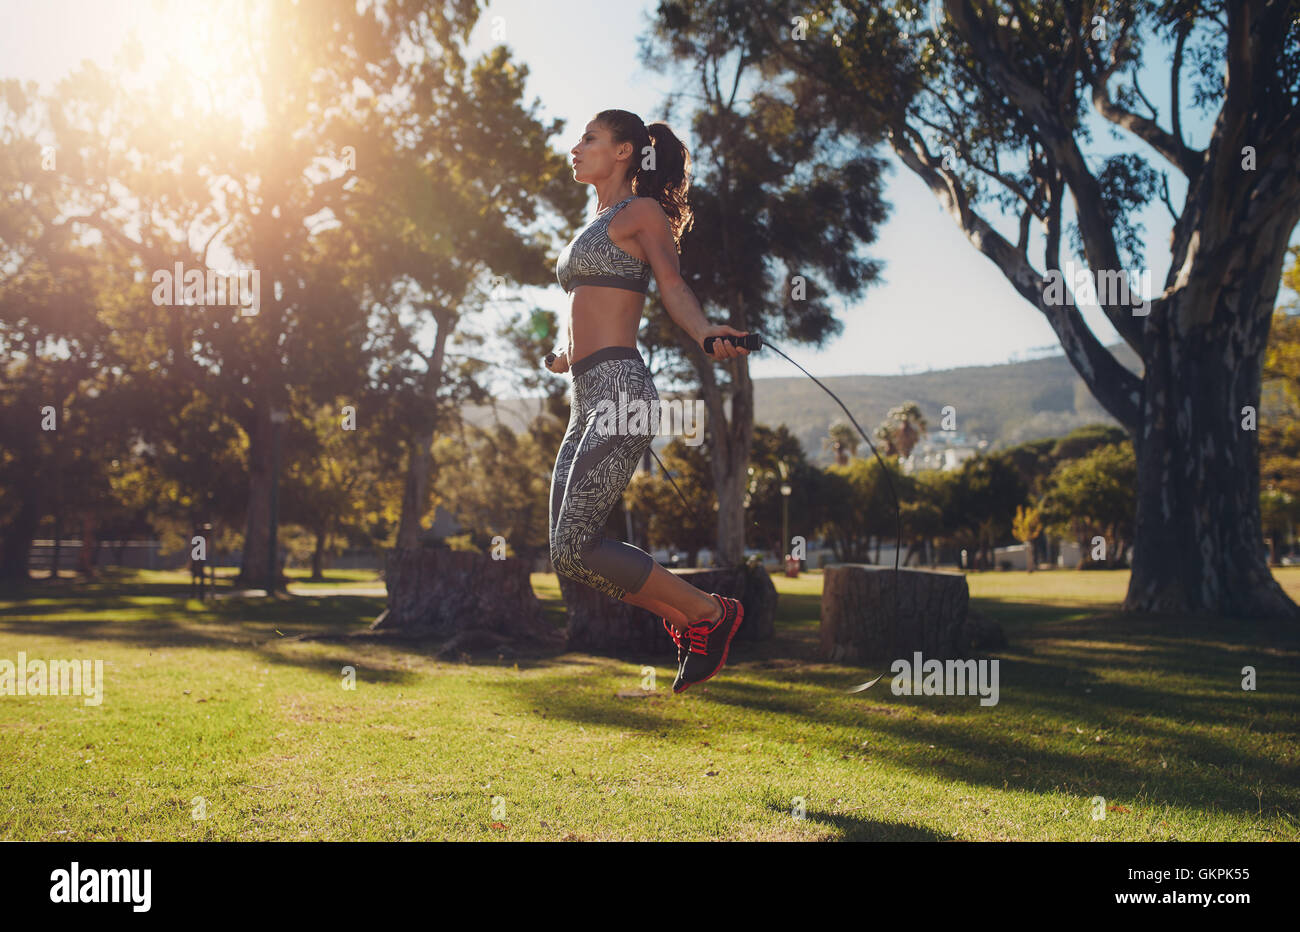 A piena lunghezza Ritratto di montare la giovane donna saltando con un salto con la corda nel parco in un giorno d'estate. Foto Stock